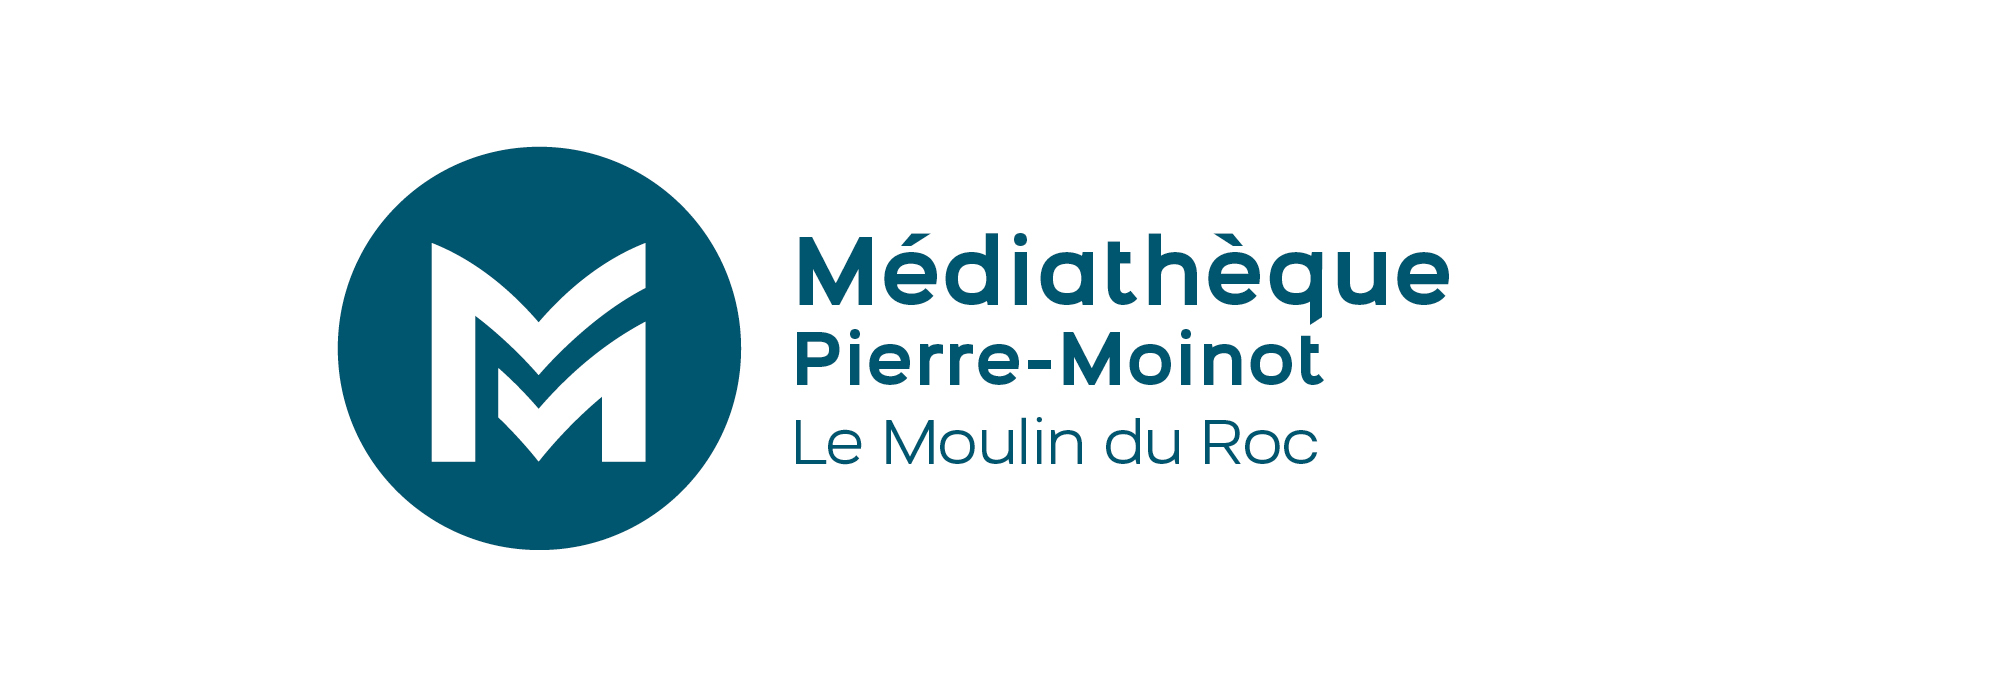 Logo de la médiathèque Pierre-Moinot de Niort